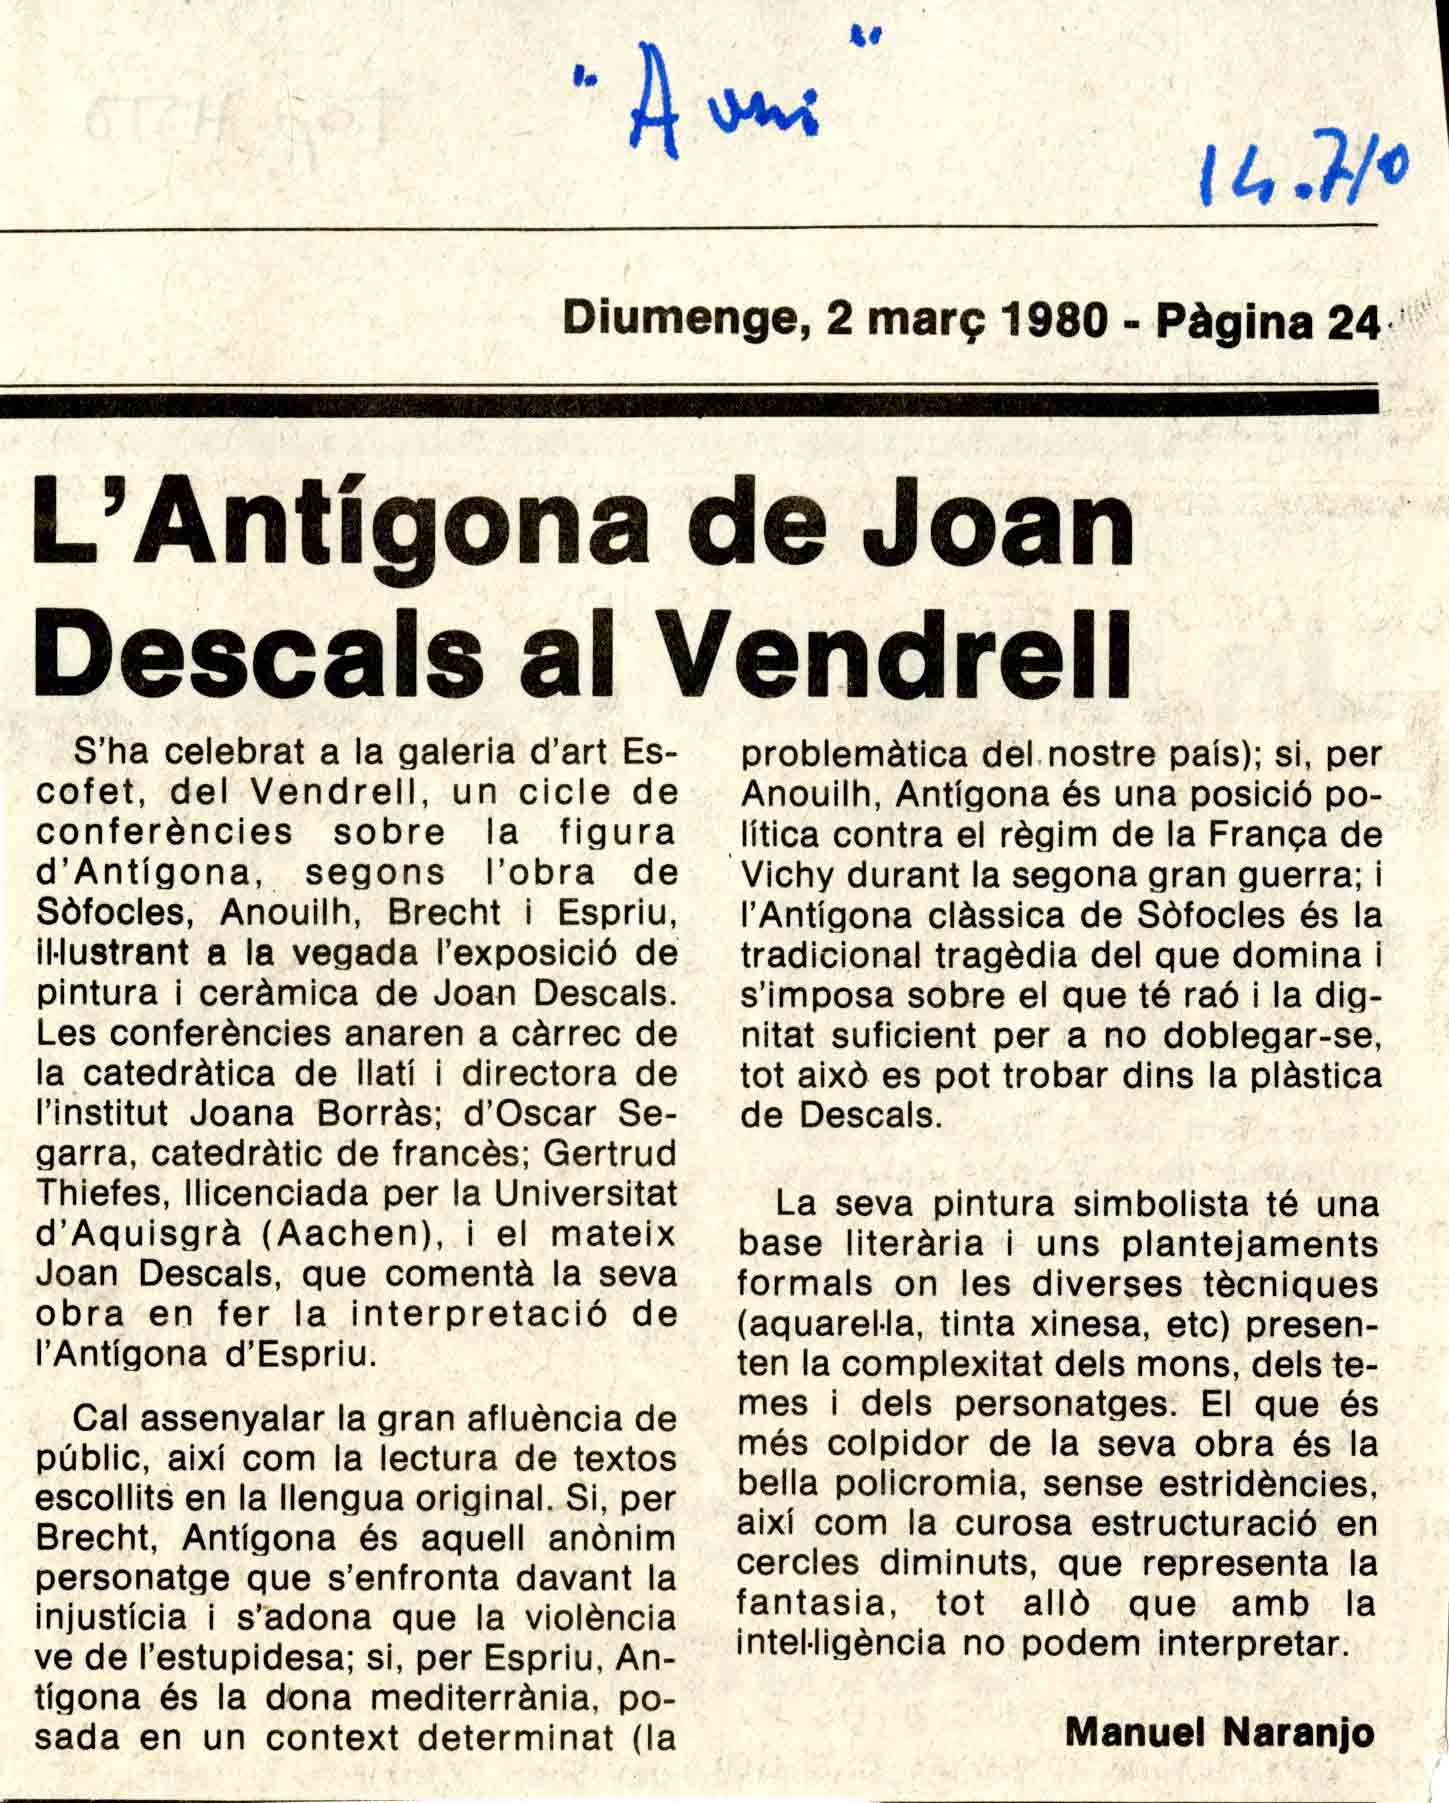 Naranjo, Manuel. L'Antígona de Joan Descals al Vendrell. L'Avui, 02/03/1980